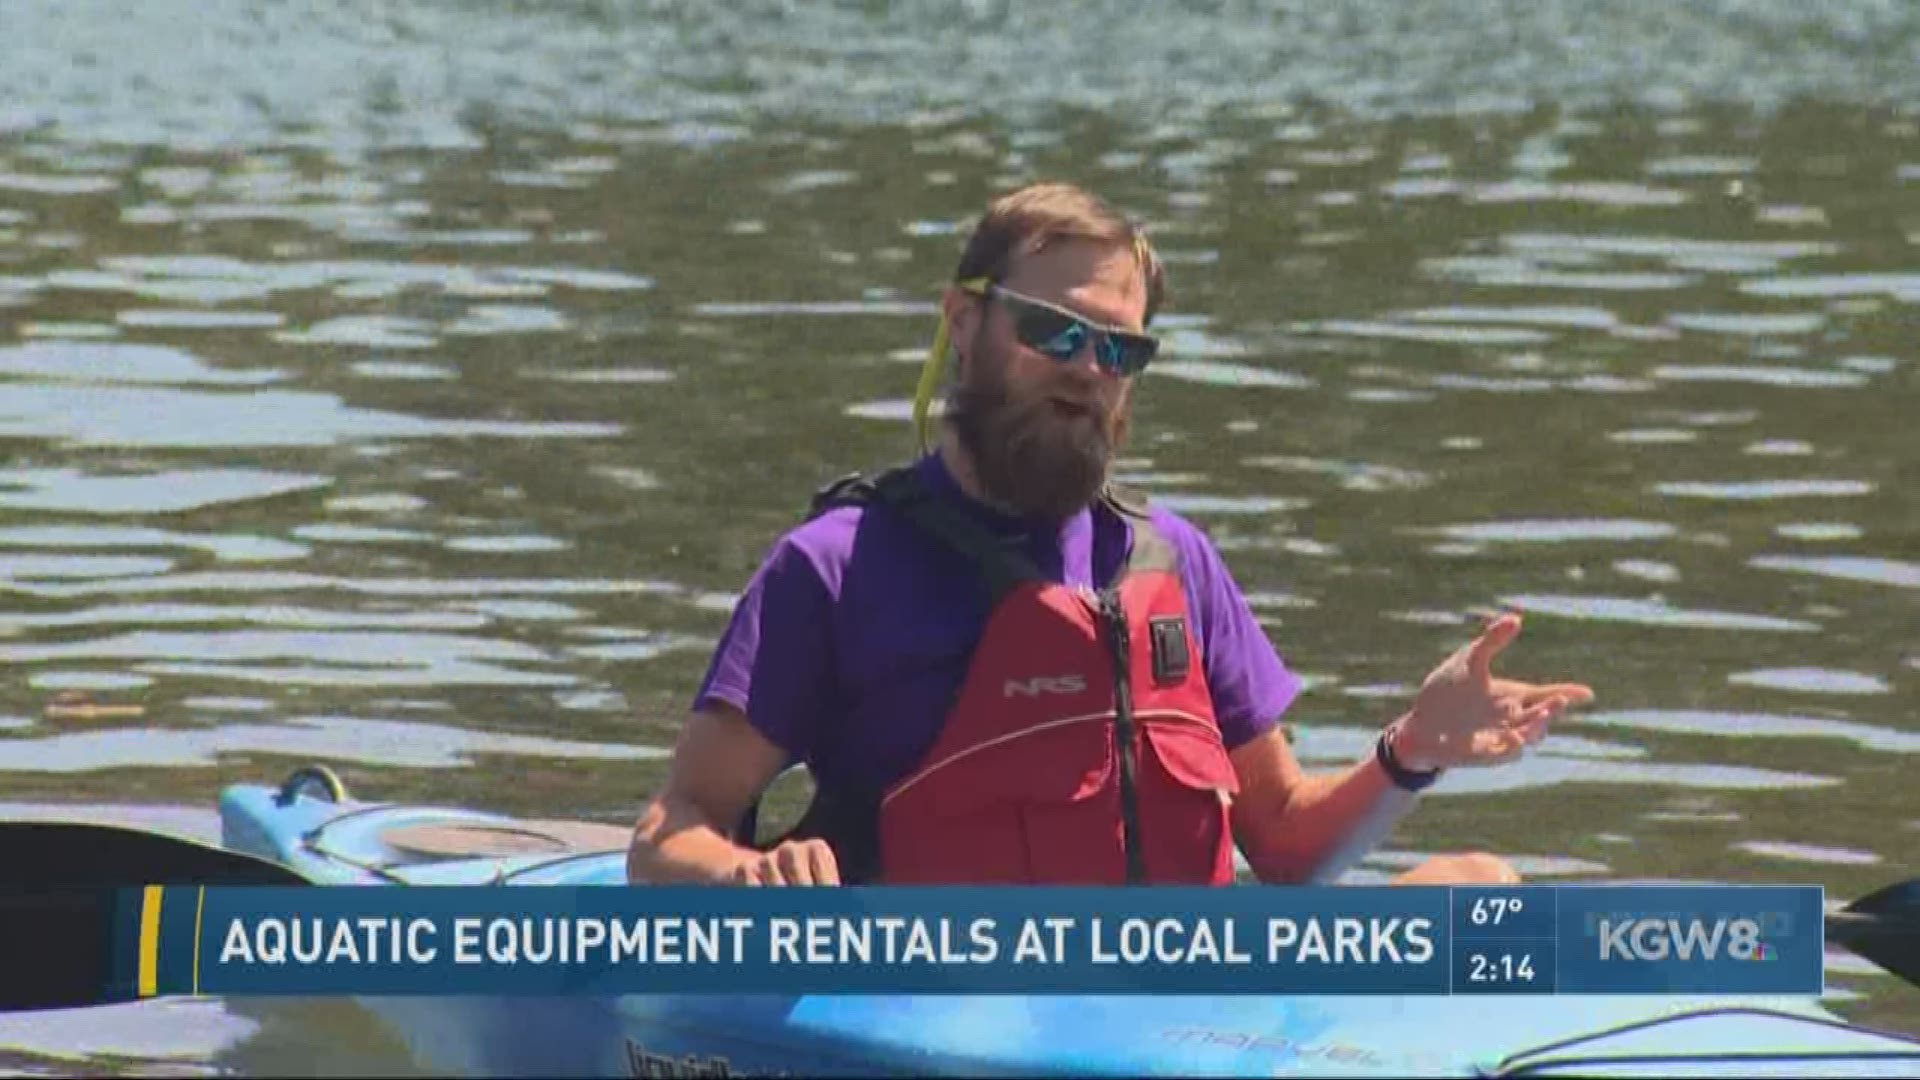 Aquatic equipment rentals at local parks